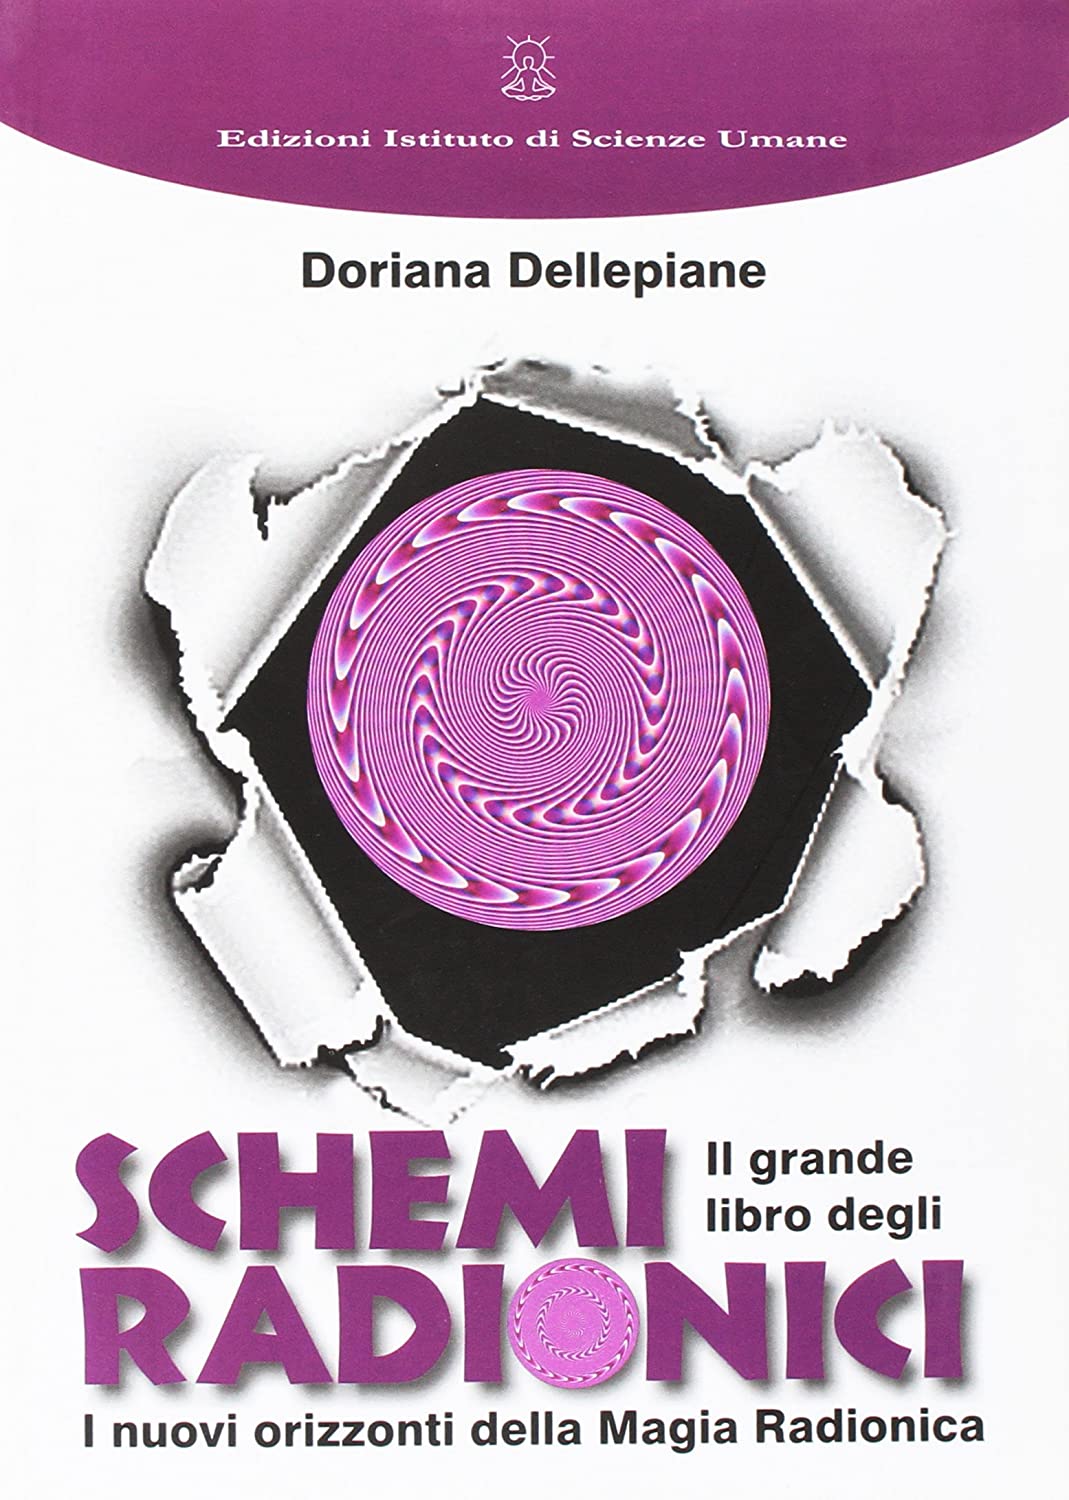 Libri Doriana Dellepiane - Il Grande Libro Degli Schemi Radionici NUOVO SIGILLATO, EDIZIONE DEL 29/04/2016 SUBITO DISPONIBILE